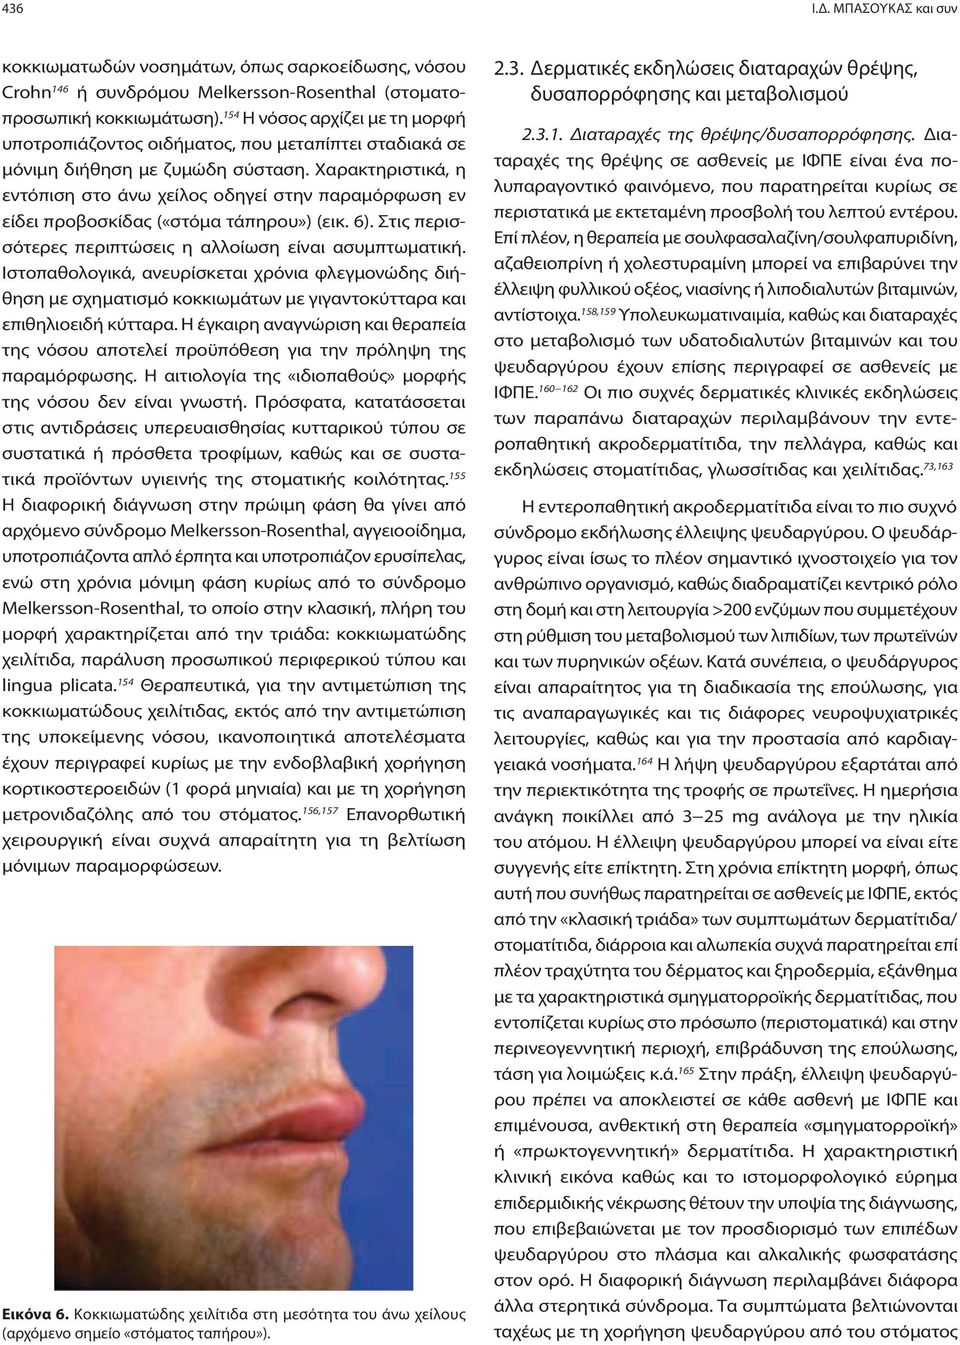 Χαρακτηριστικά, η εντόπιση στο άνω χείλος οδηγεί στην παραμόρφωση εν είδει προβοσκίδας («στόμα τάπηρου») (εικ. 6). Στις περισσότερες περιπτώσεις η αλλοίωση είναι ασυμπτωματική.